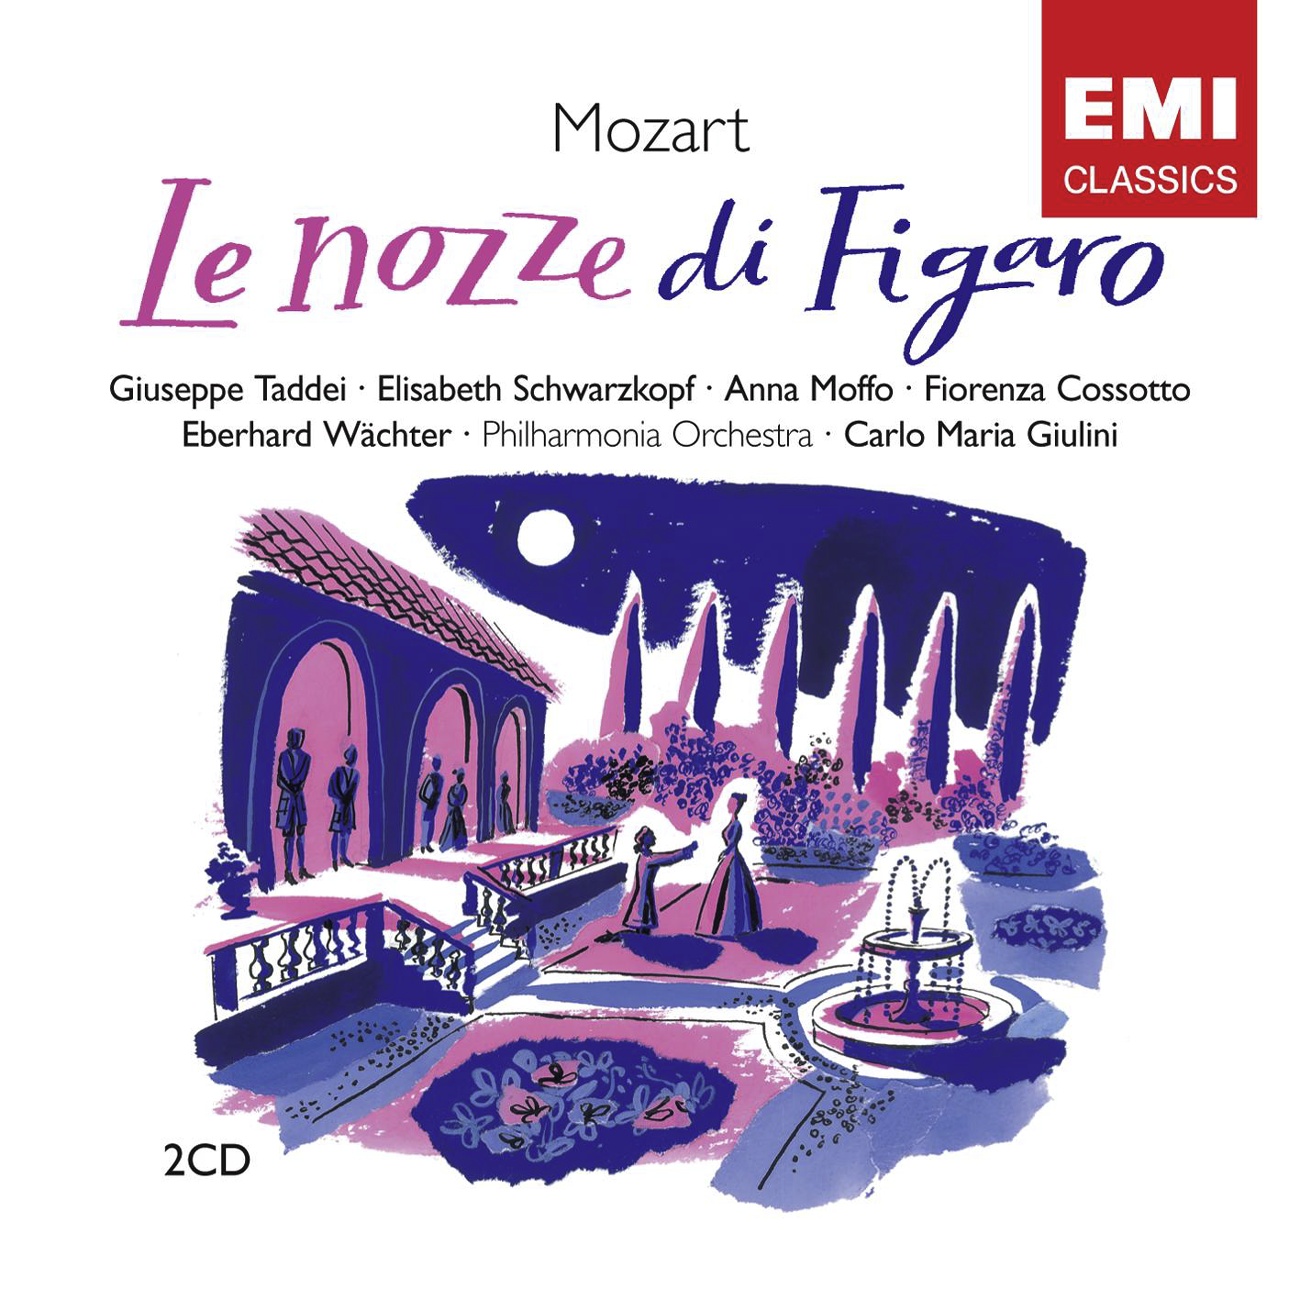 Le nozze di Figaro K492 (1989 Digital Remaster), Atto Secondo: Recitativo:  Bravo!  Che bella voce! (Contessa/Susanna/Cherubino)